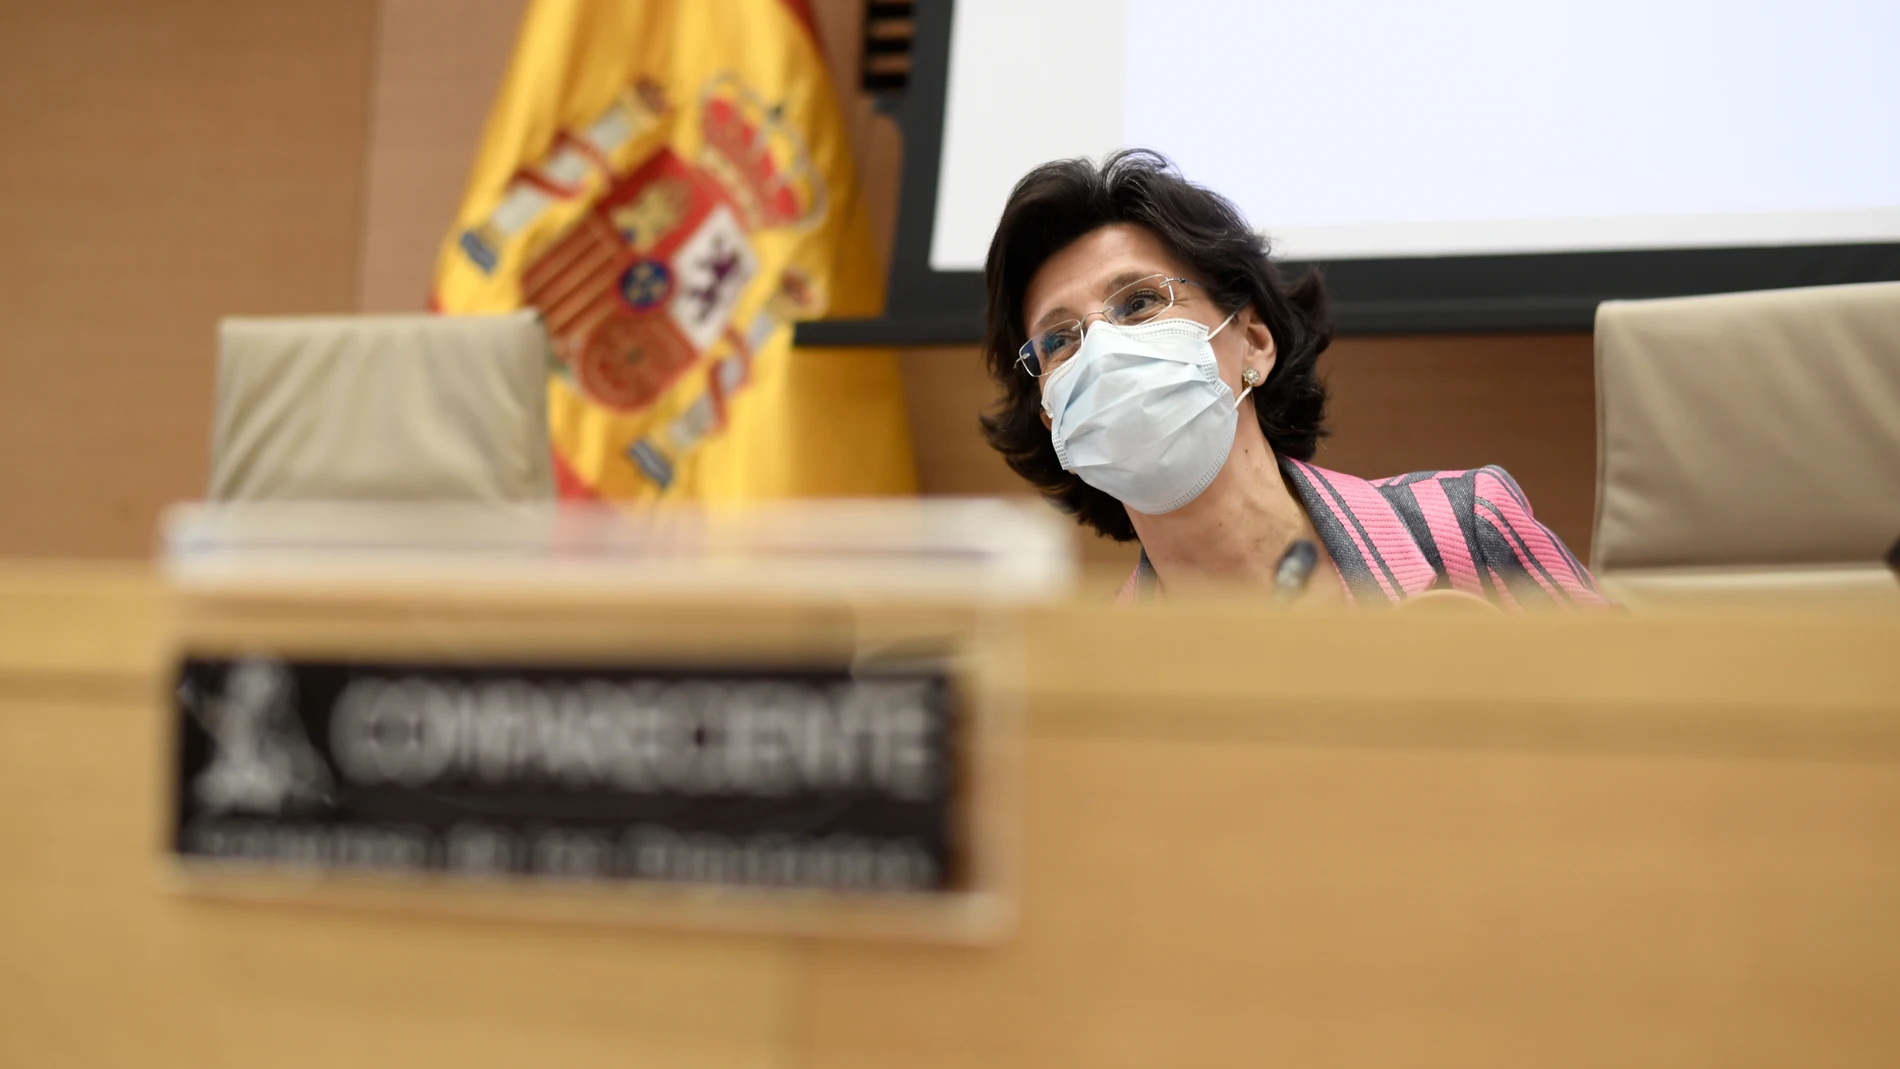 La presidenta del Tribunal de Cuentas, María José de la Fuente y de la Calle, a su llegada a la Comisión Mixta para las Relaciones con el Tribunal de Cuentas, a 18 de mayo de 2021